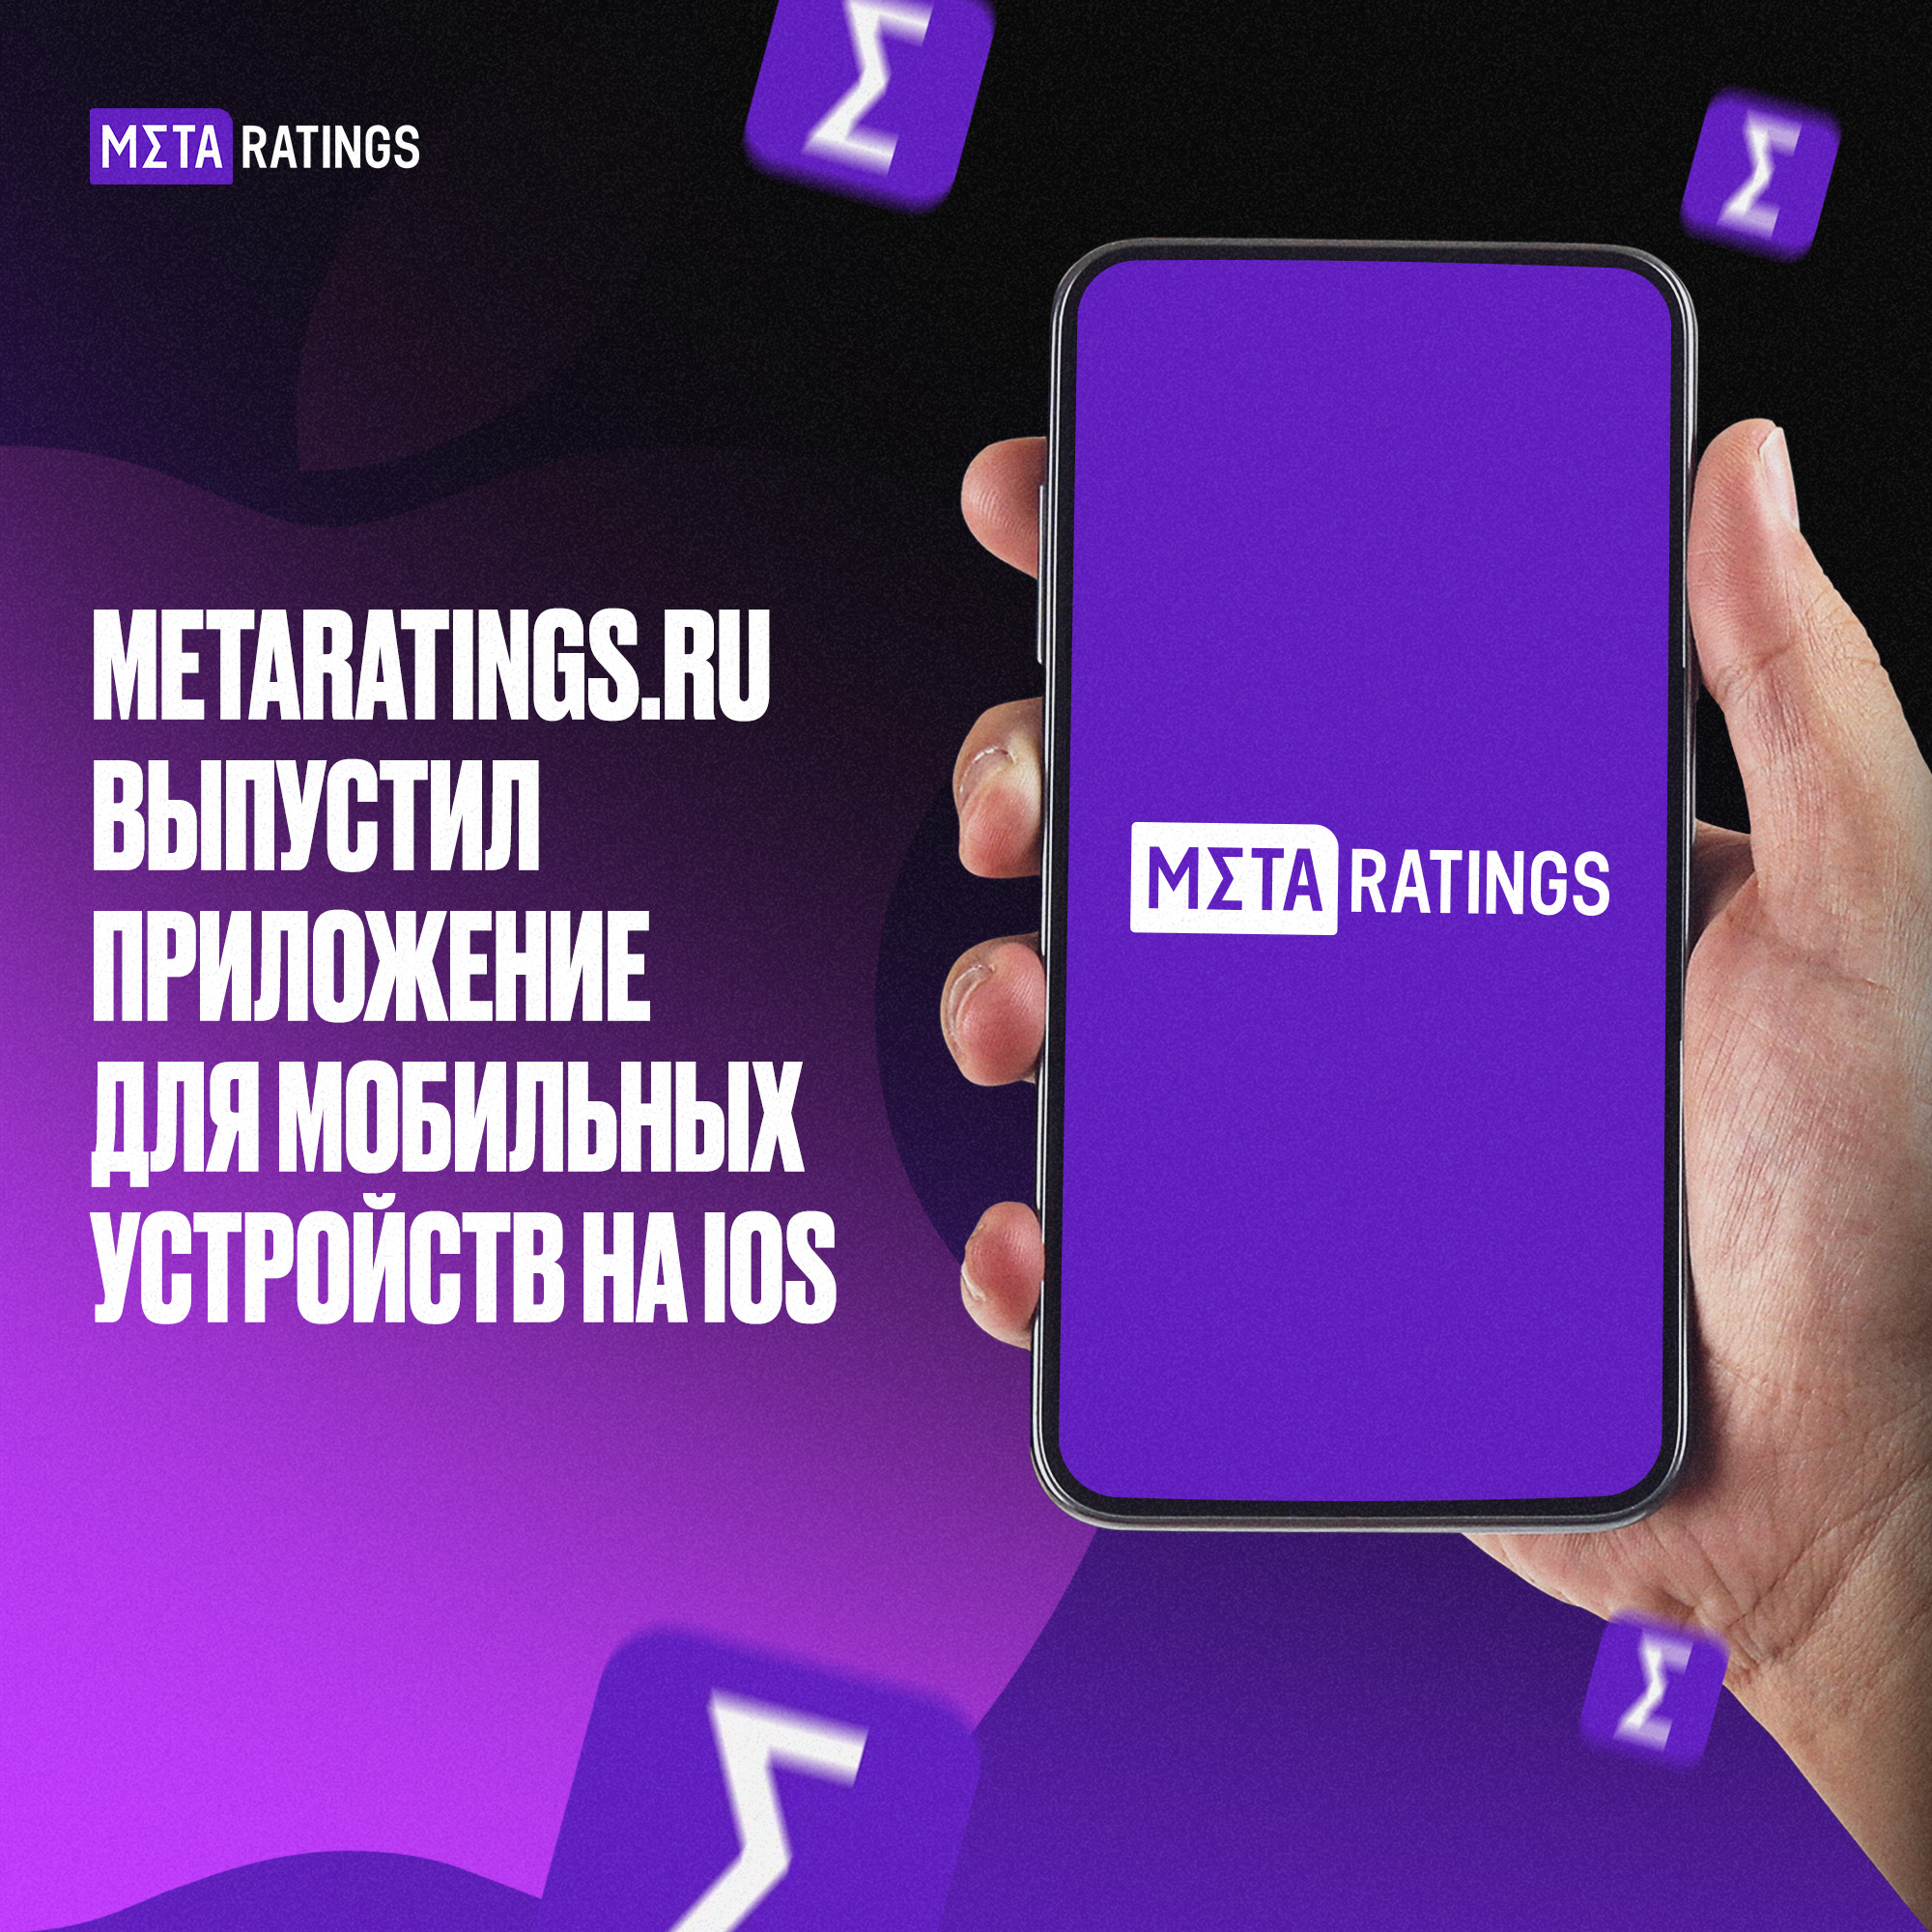 Metaratings.ru выпустил приложение для мобильных устройств на iOS